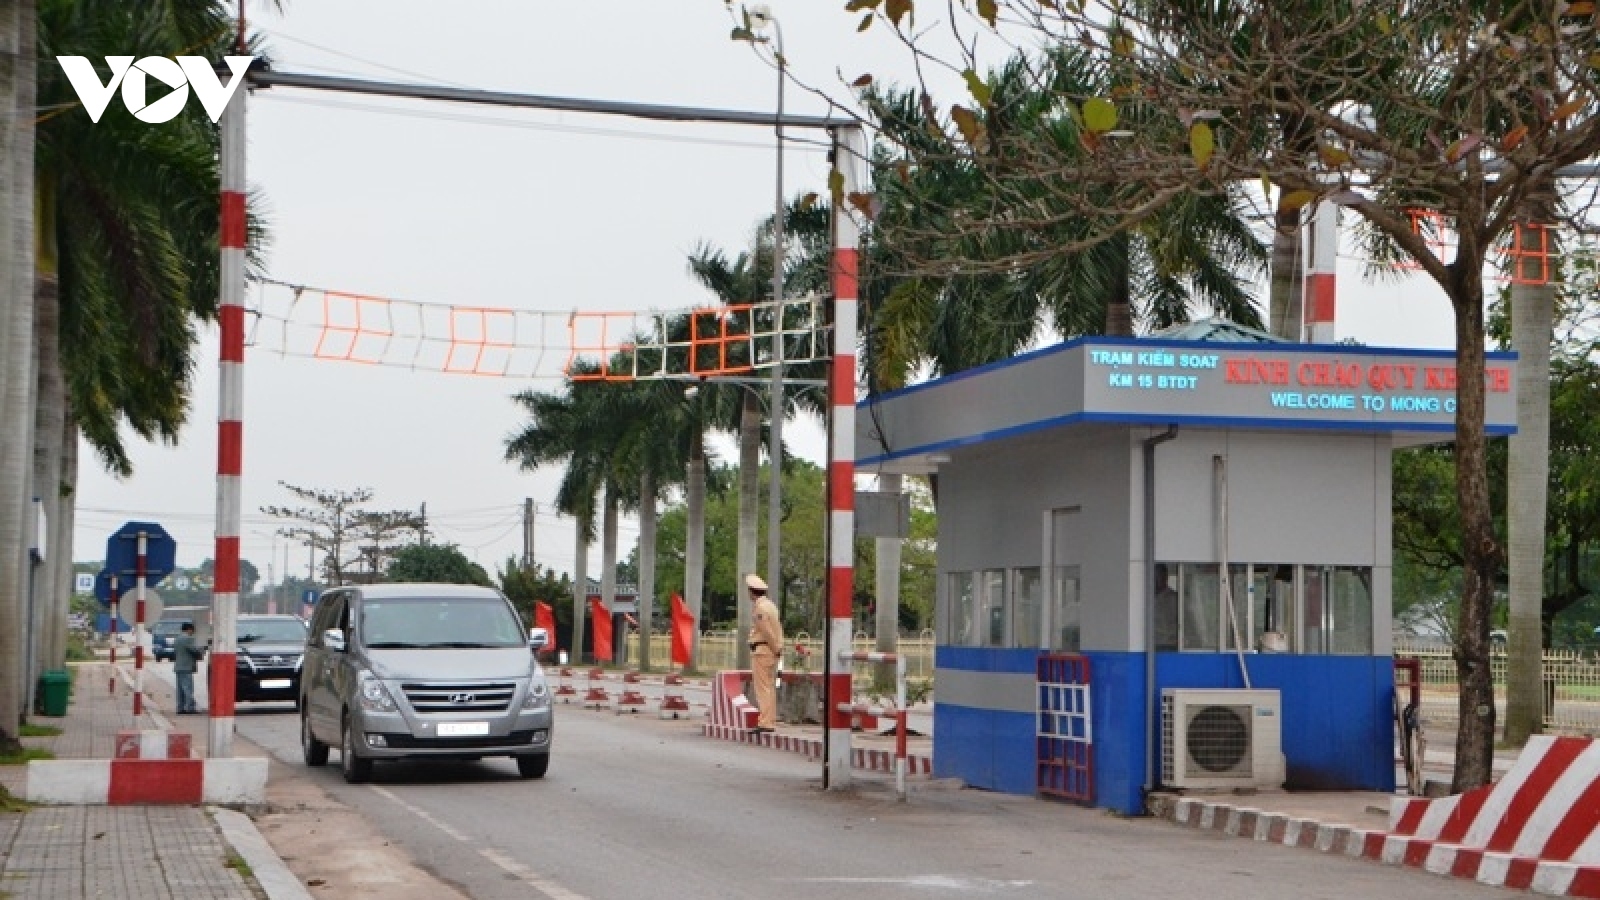 Quảng Ninh gỡ bỏ test nhanh ở Trạm Kiểm soát Km 15 - Bến tàu Dân Tiến